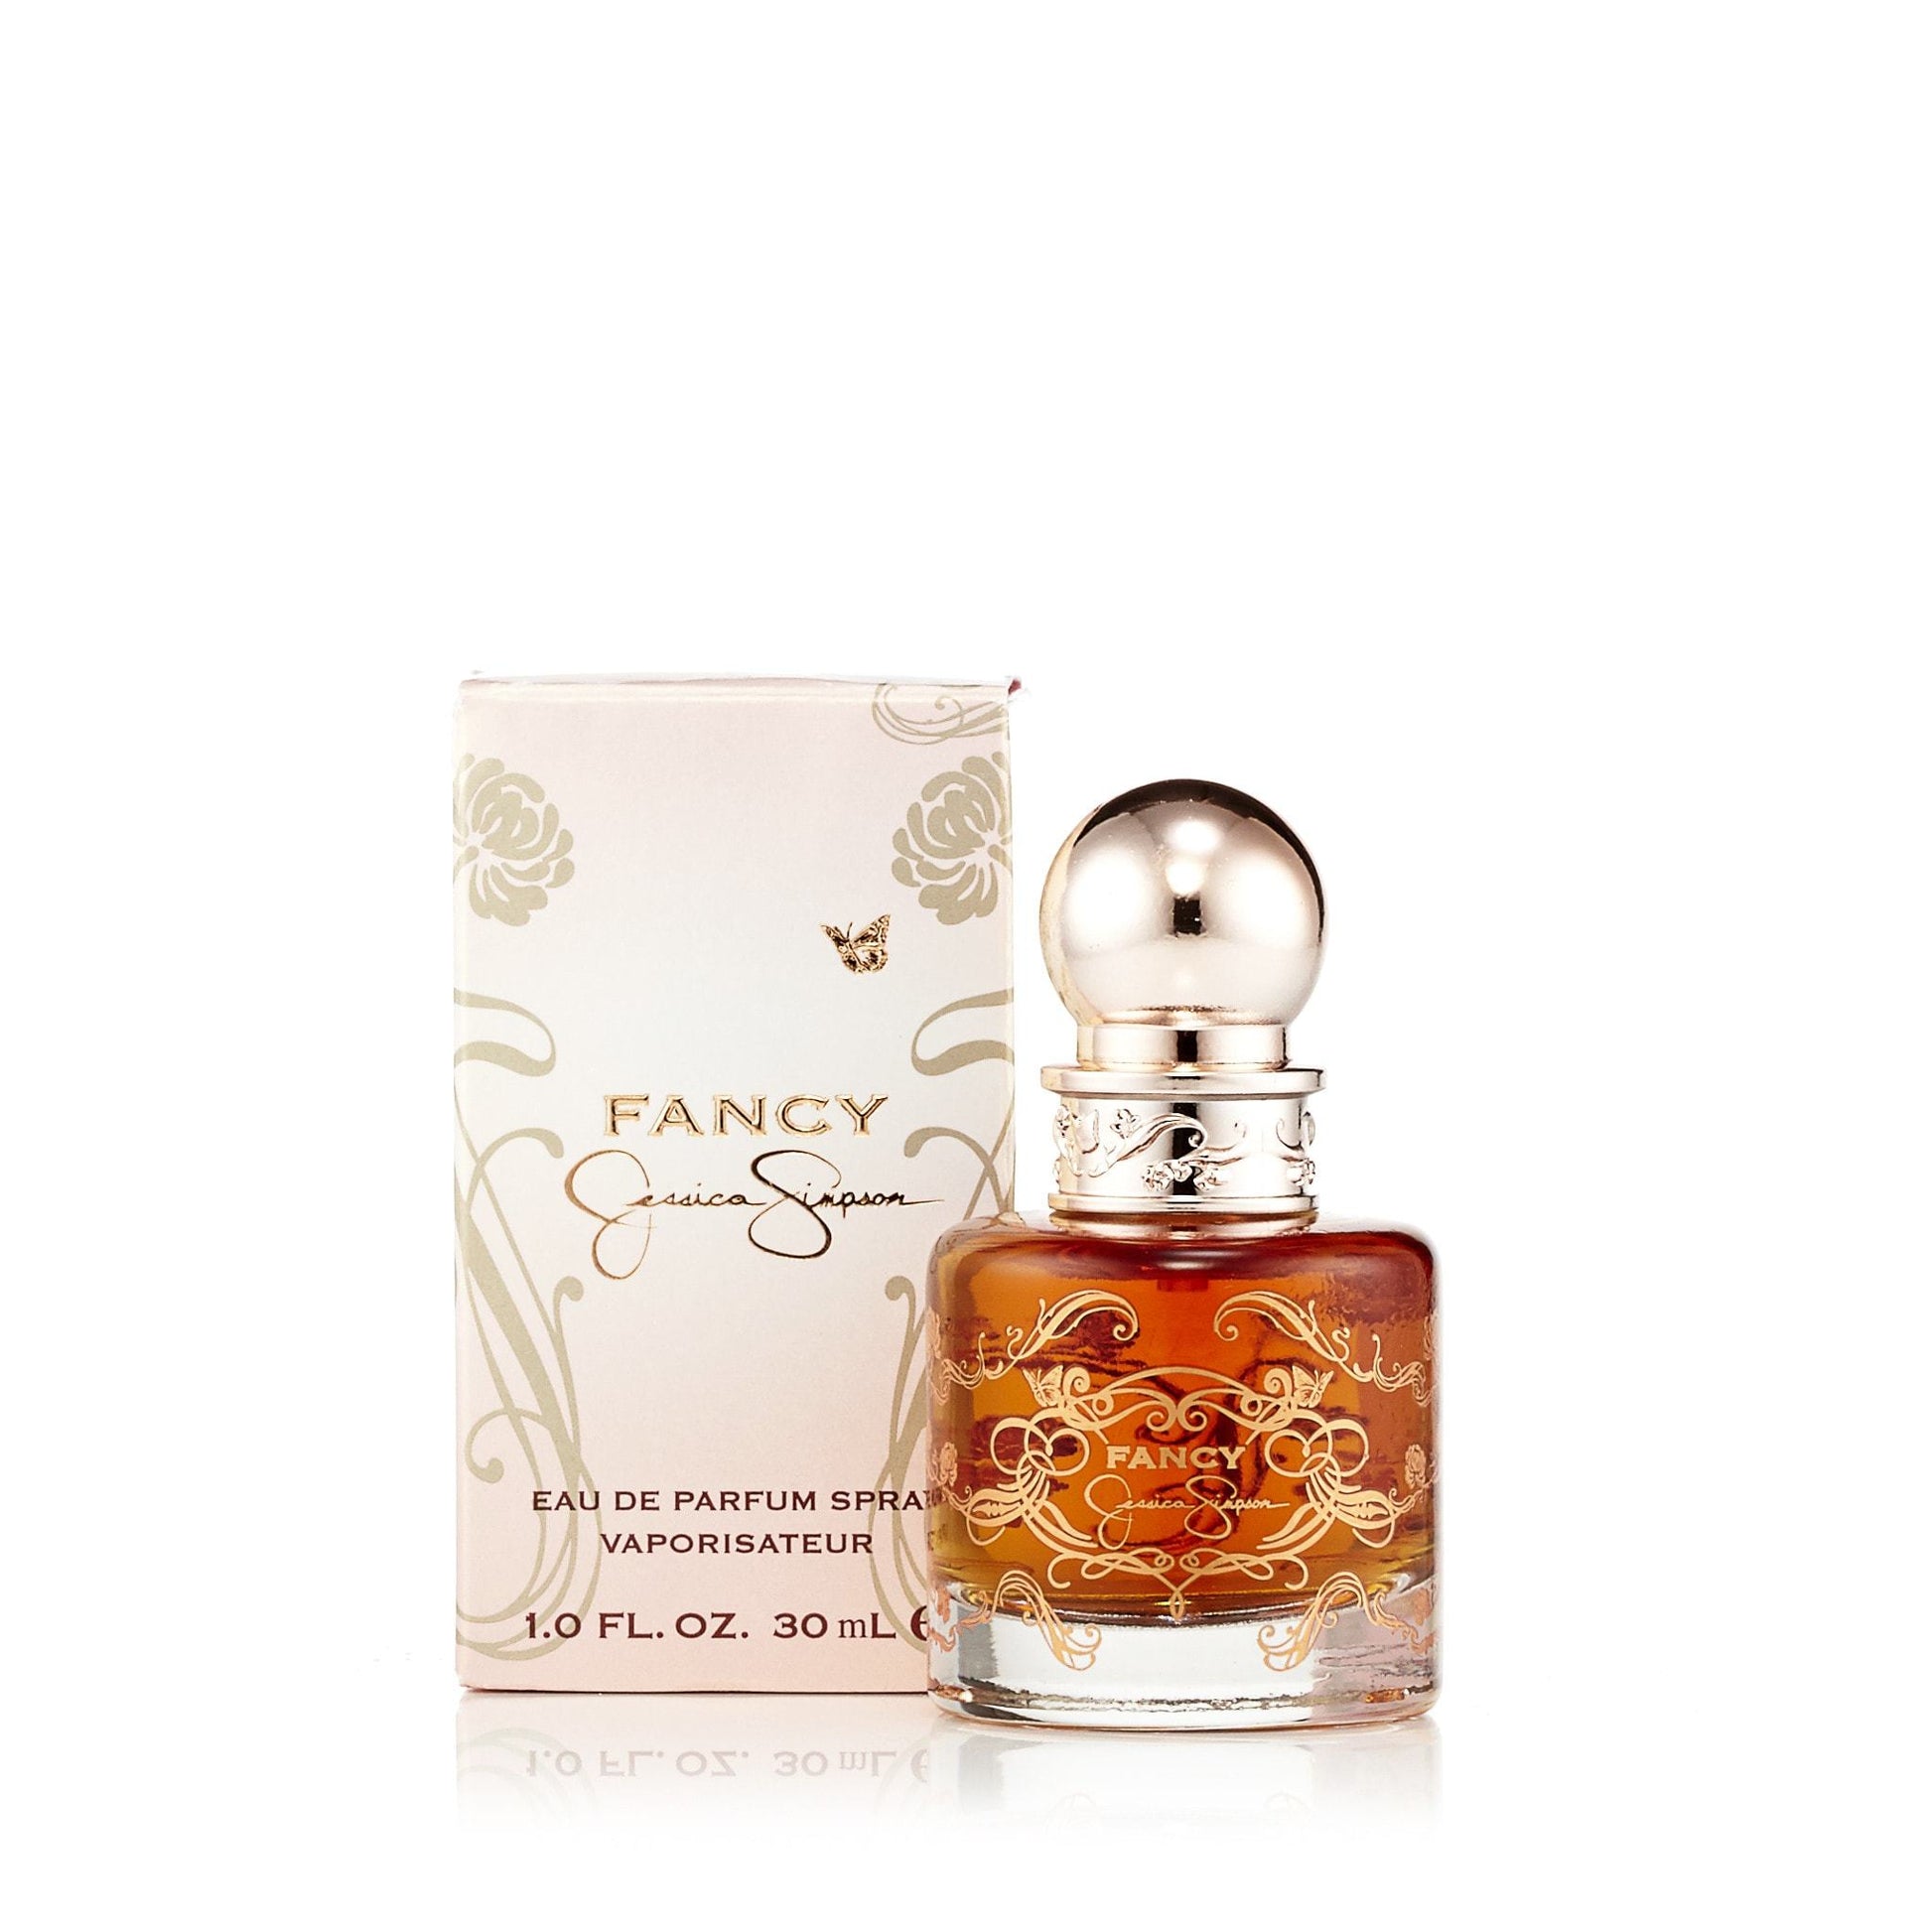 Fancy Eau de Parfum Spray for Women by Jessica Simpson, Product image 4